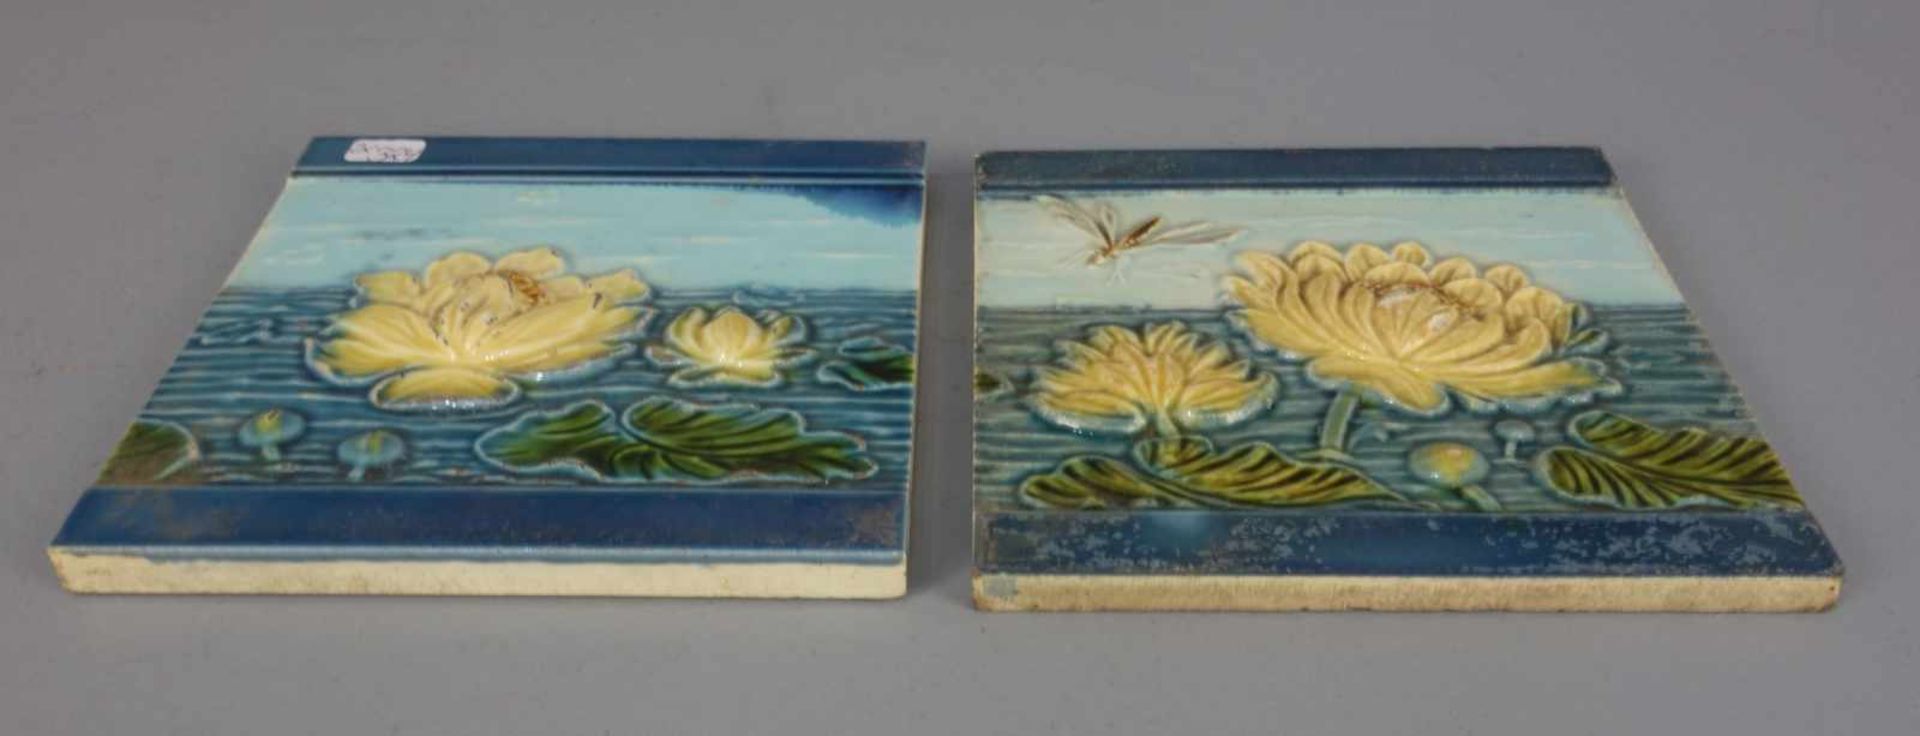 PAAR JUGENDSTIL - FLIESEN / two art nouveau tiles, heller Scherben, um 1900. Reliefdekor mit - Image 2 of 6